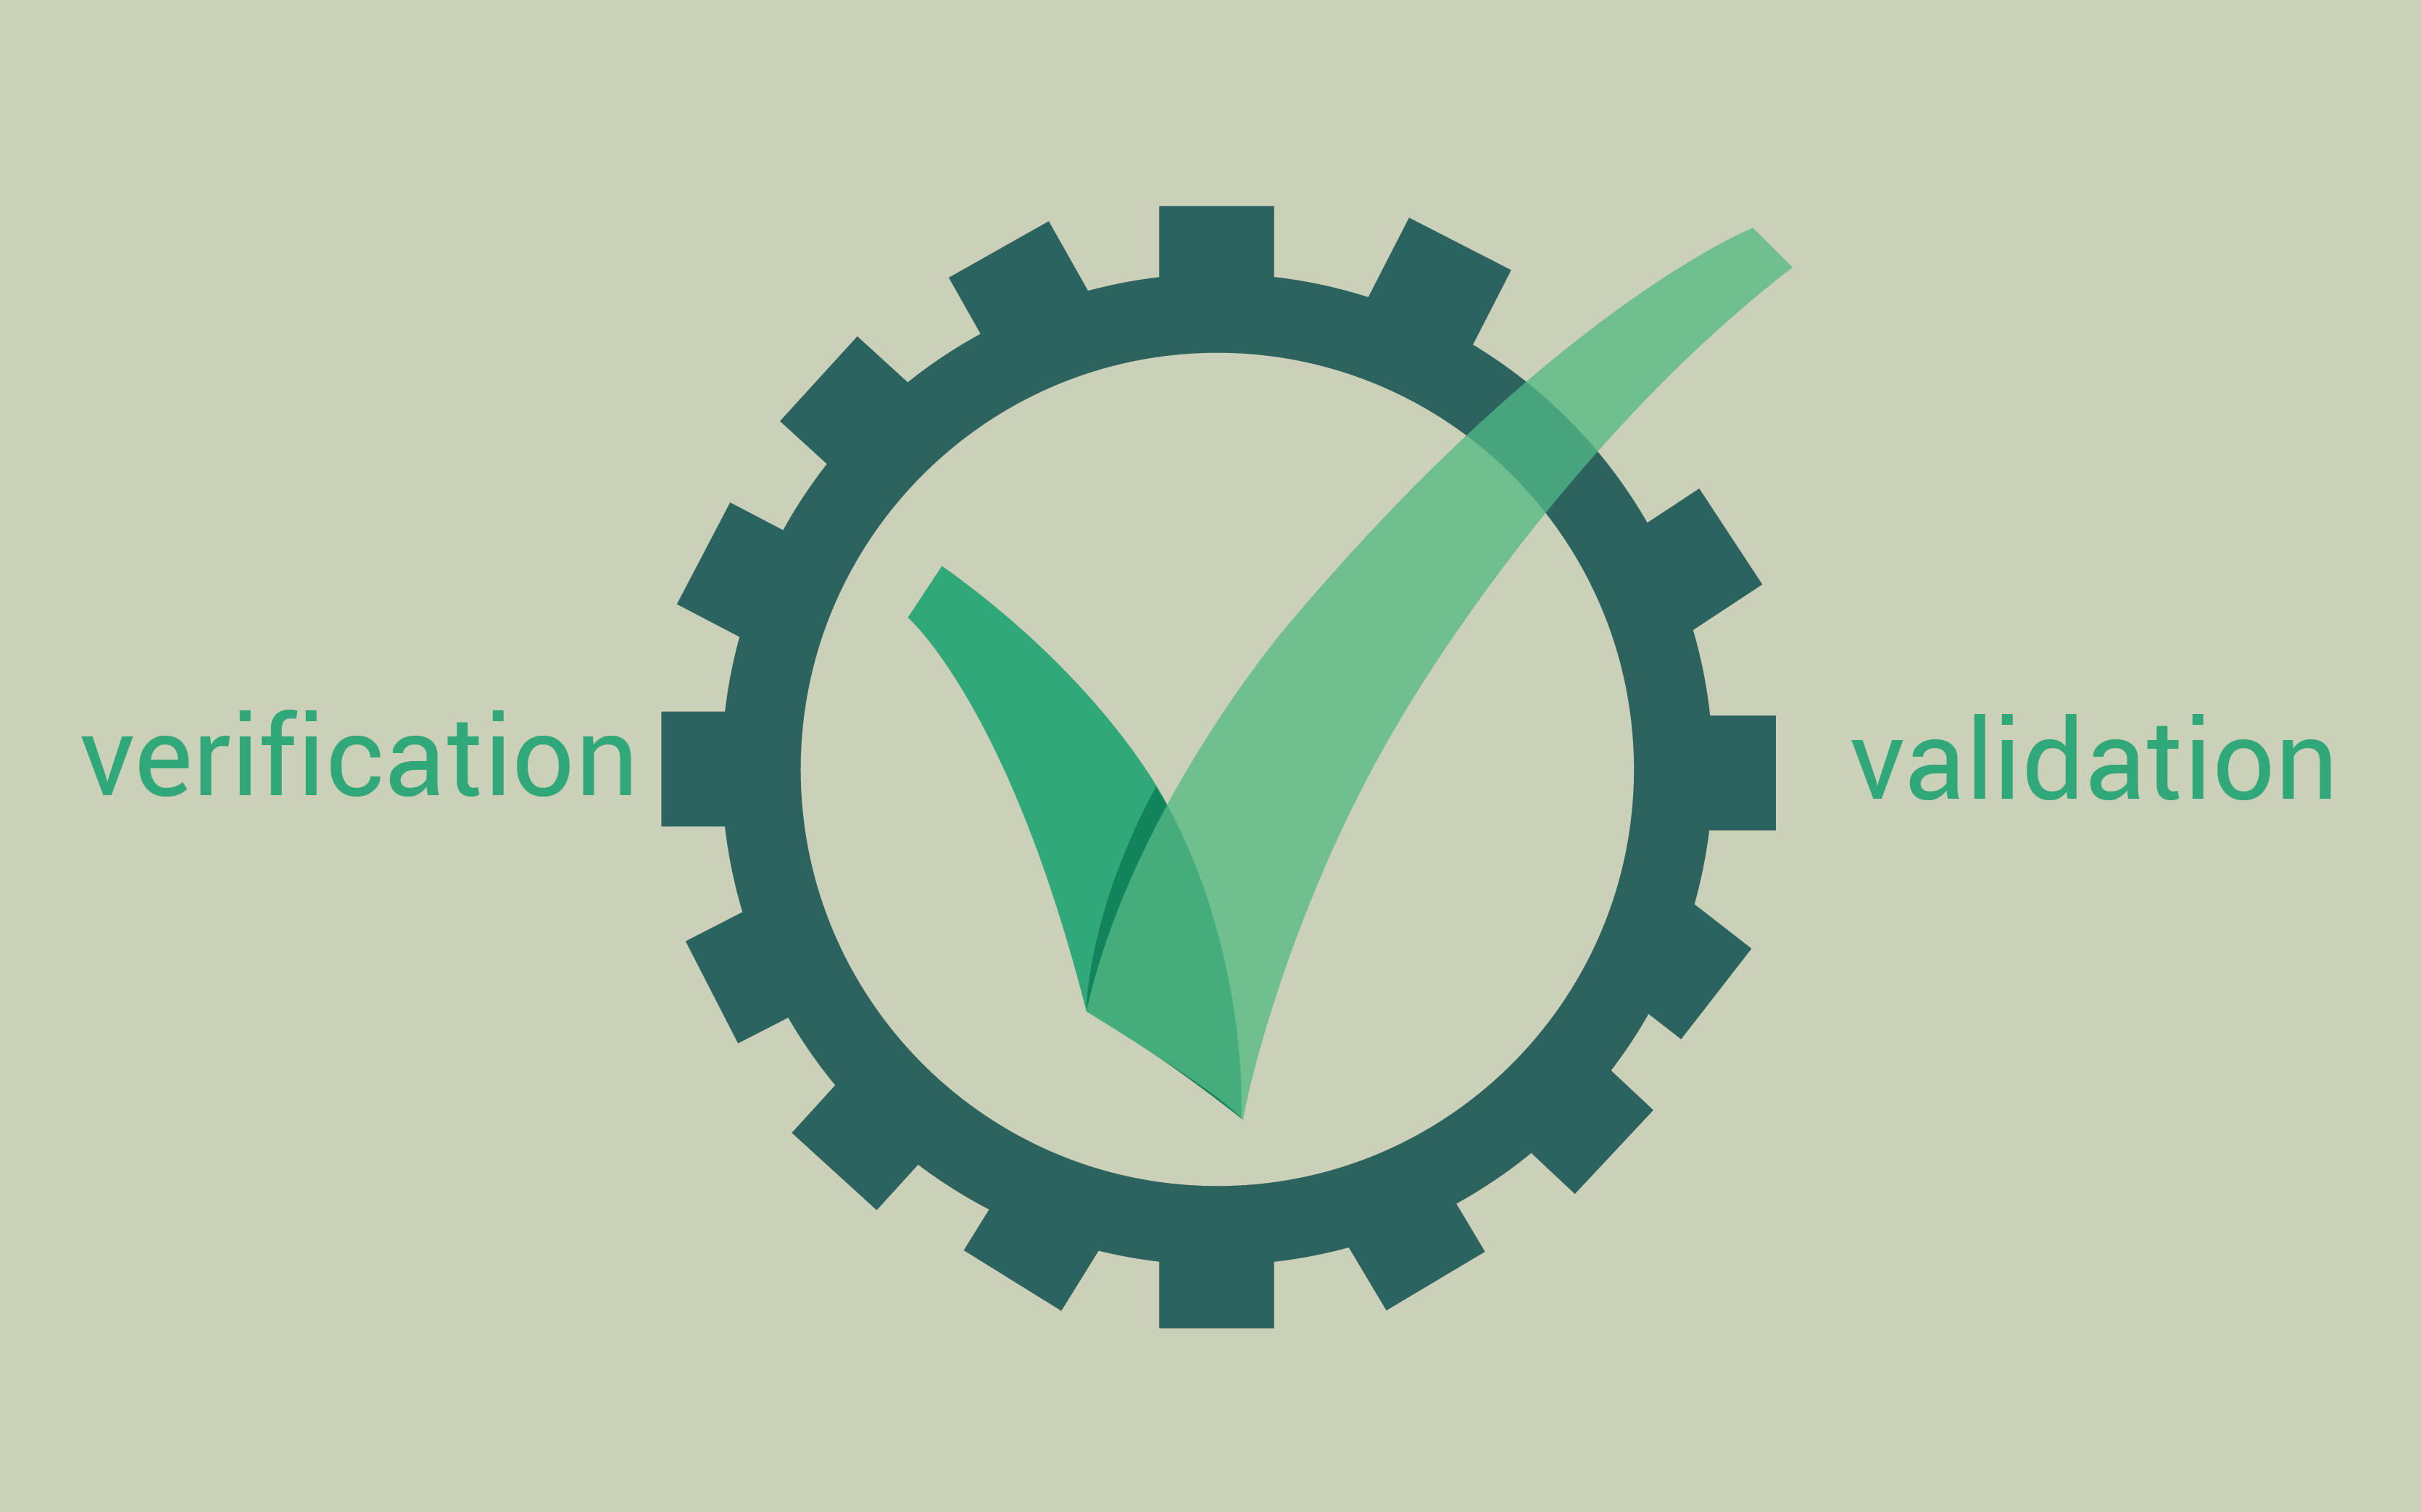 Валидация и верификация методик испытаний,
обеспечение достоверности результатов испытаний
(с учетом современных требований Росаккредитации и ILAC)